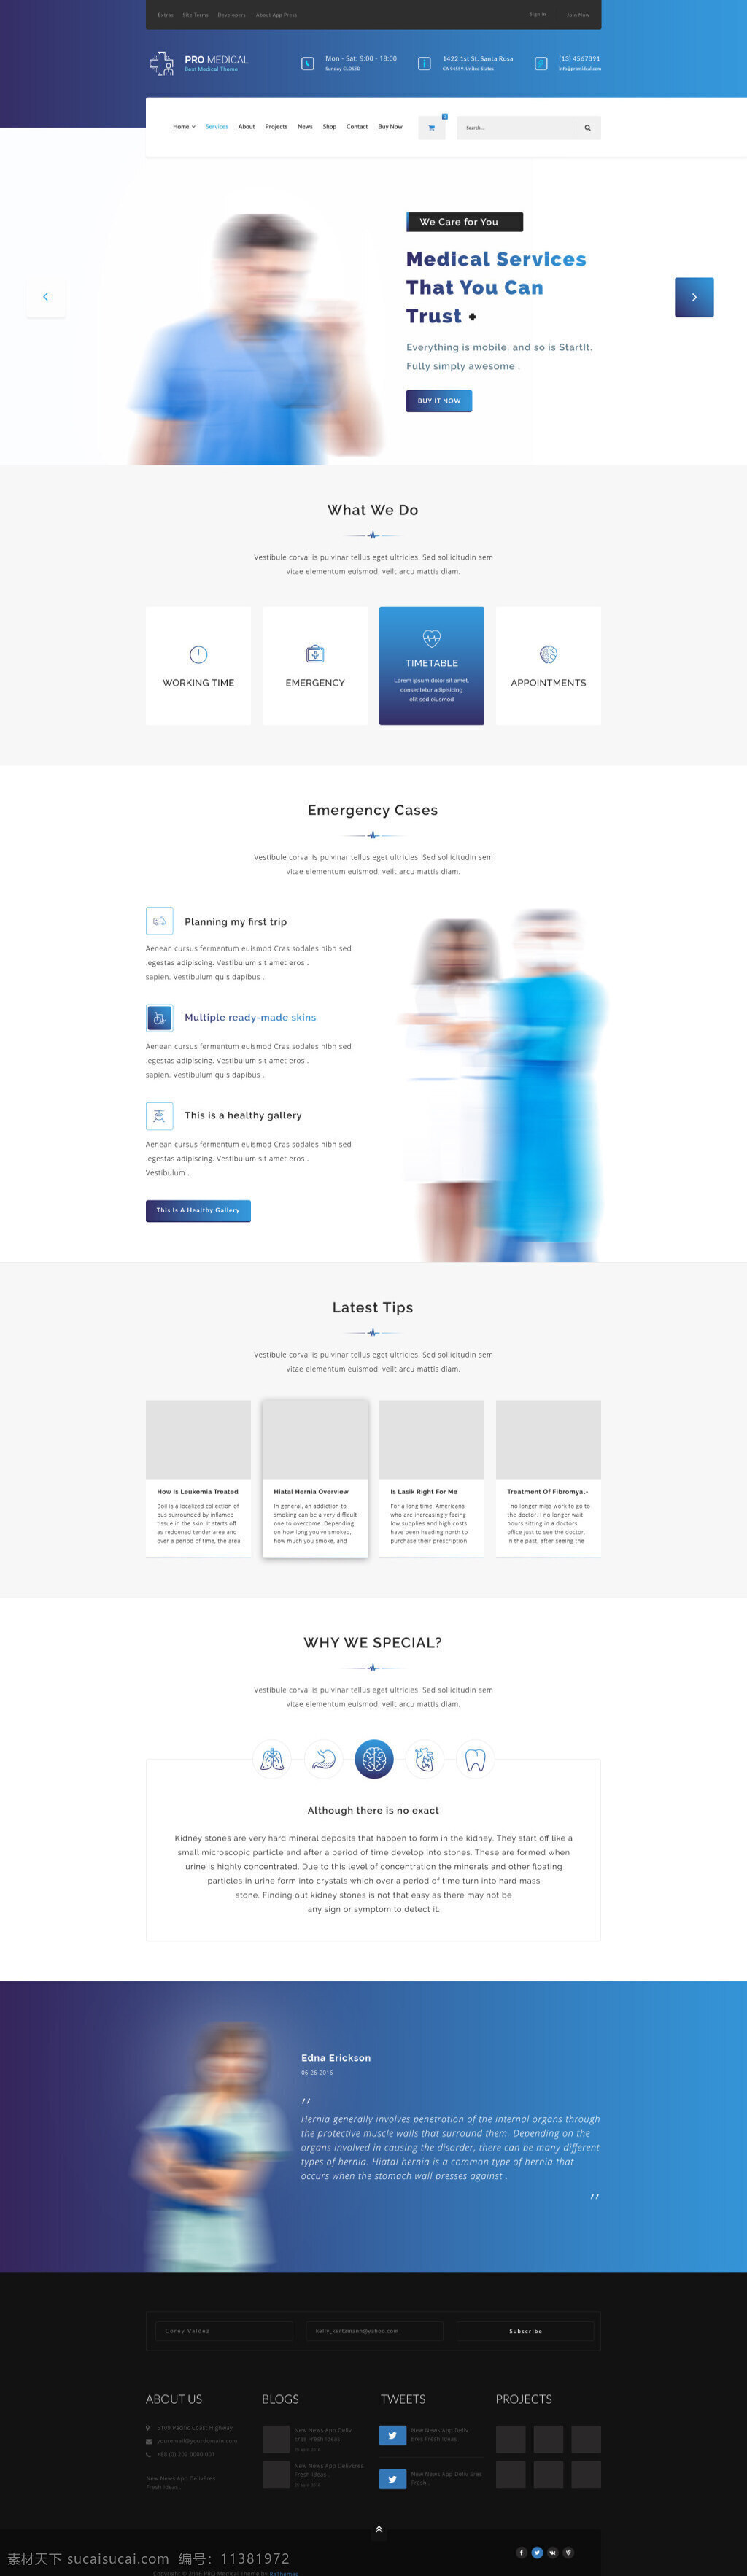 外国 保健医 疗 网站 模板 psd格式 白色 简约 蓝色 欧美 网页模板 文字 医疗 医生